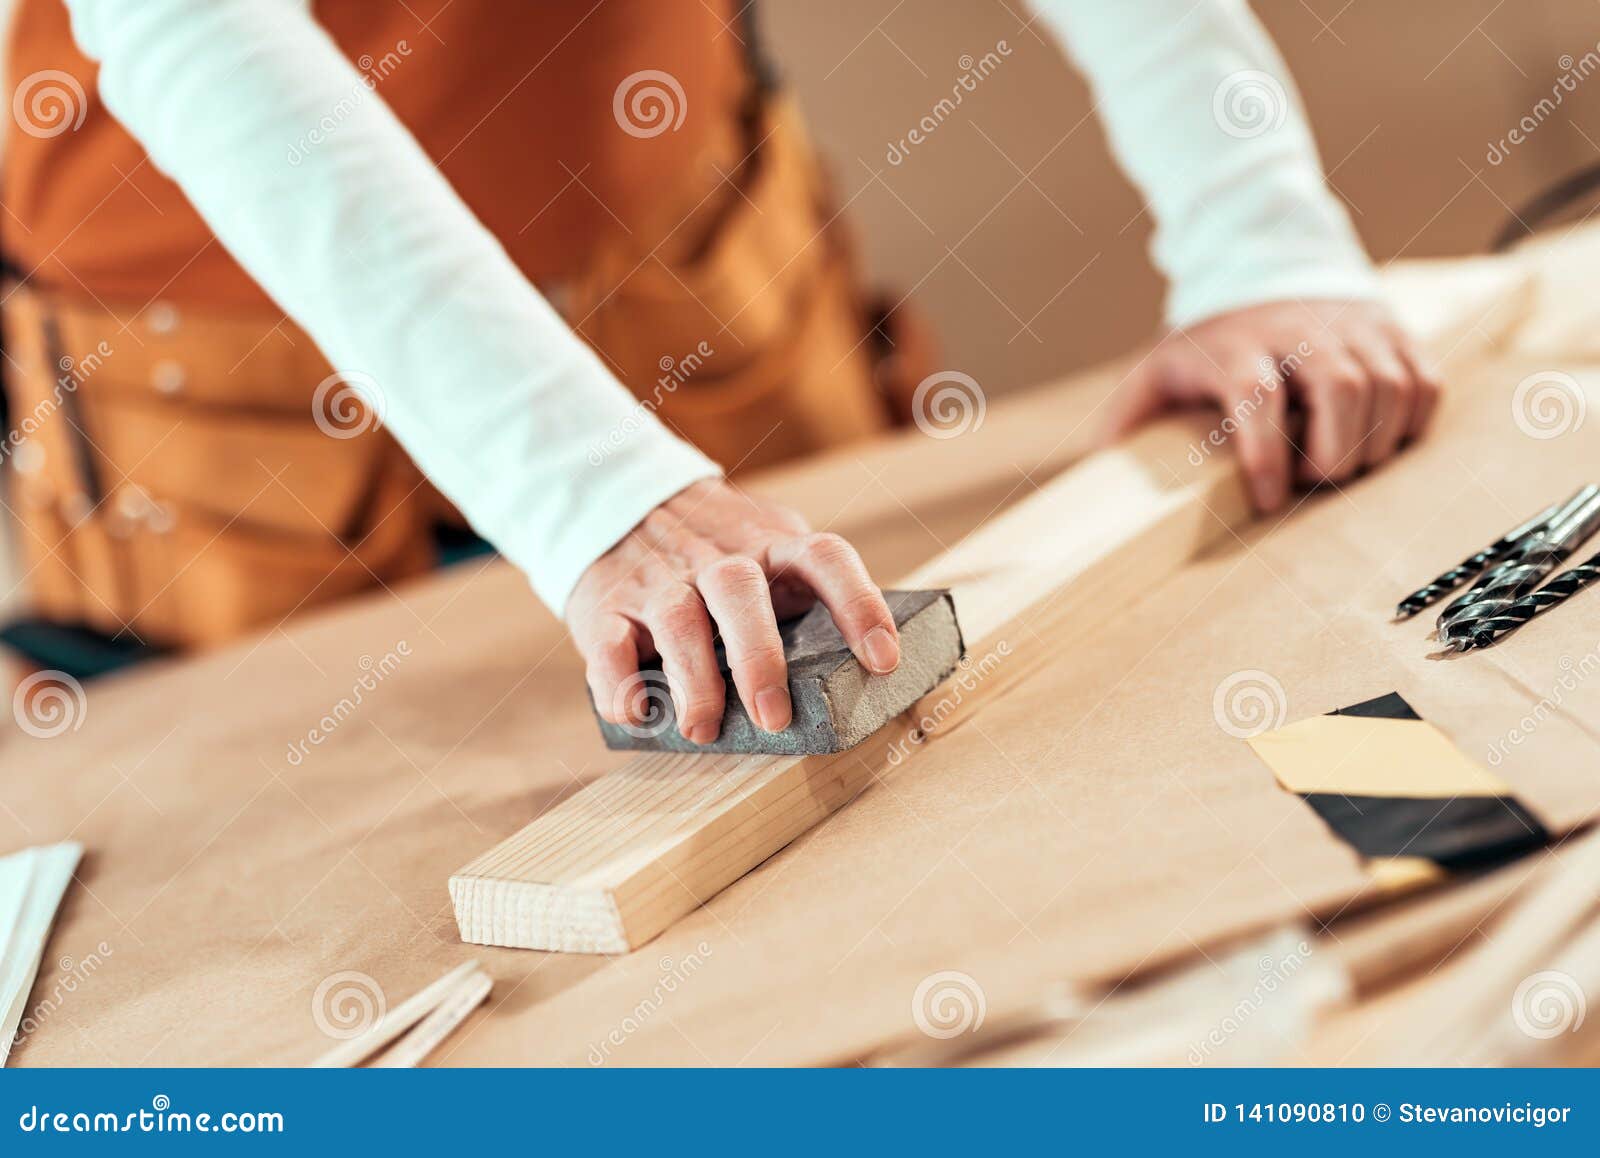 female carpenter manually sanding wooden plank